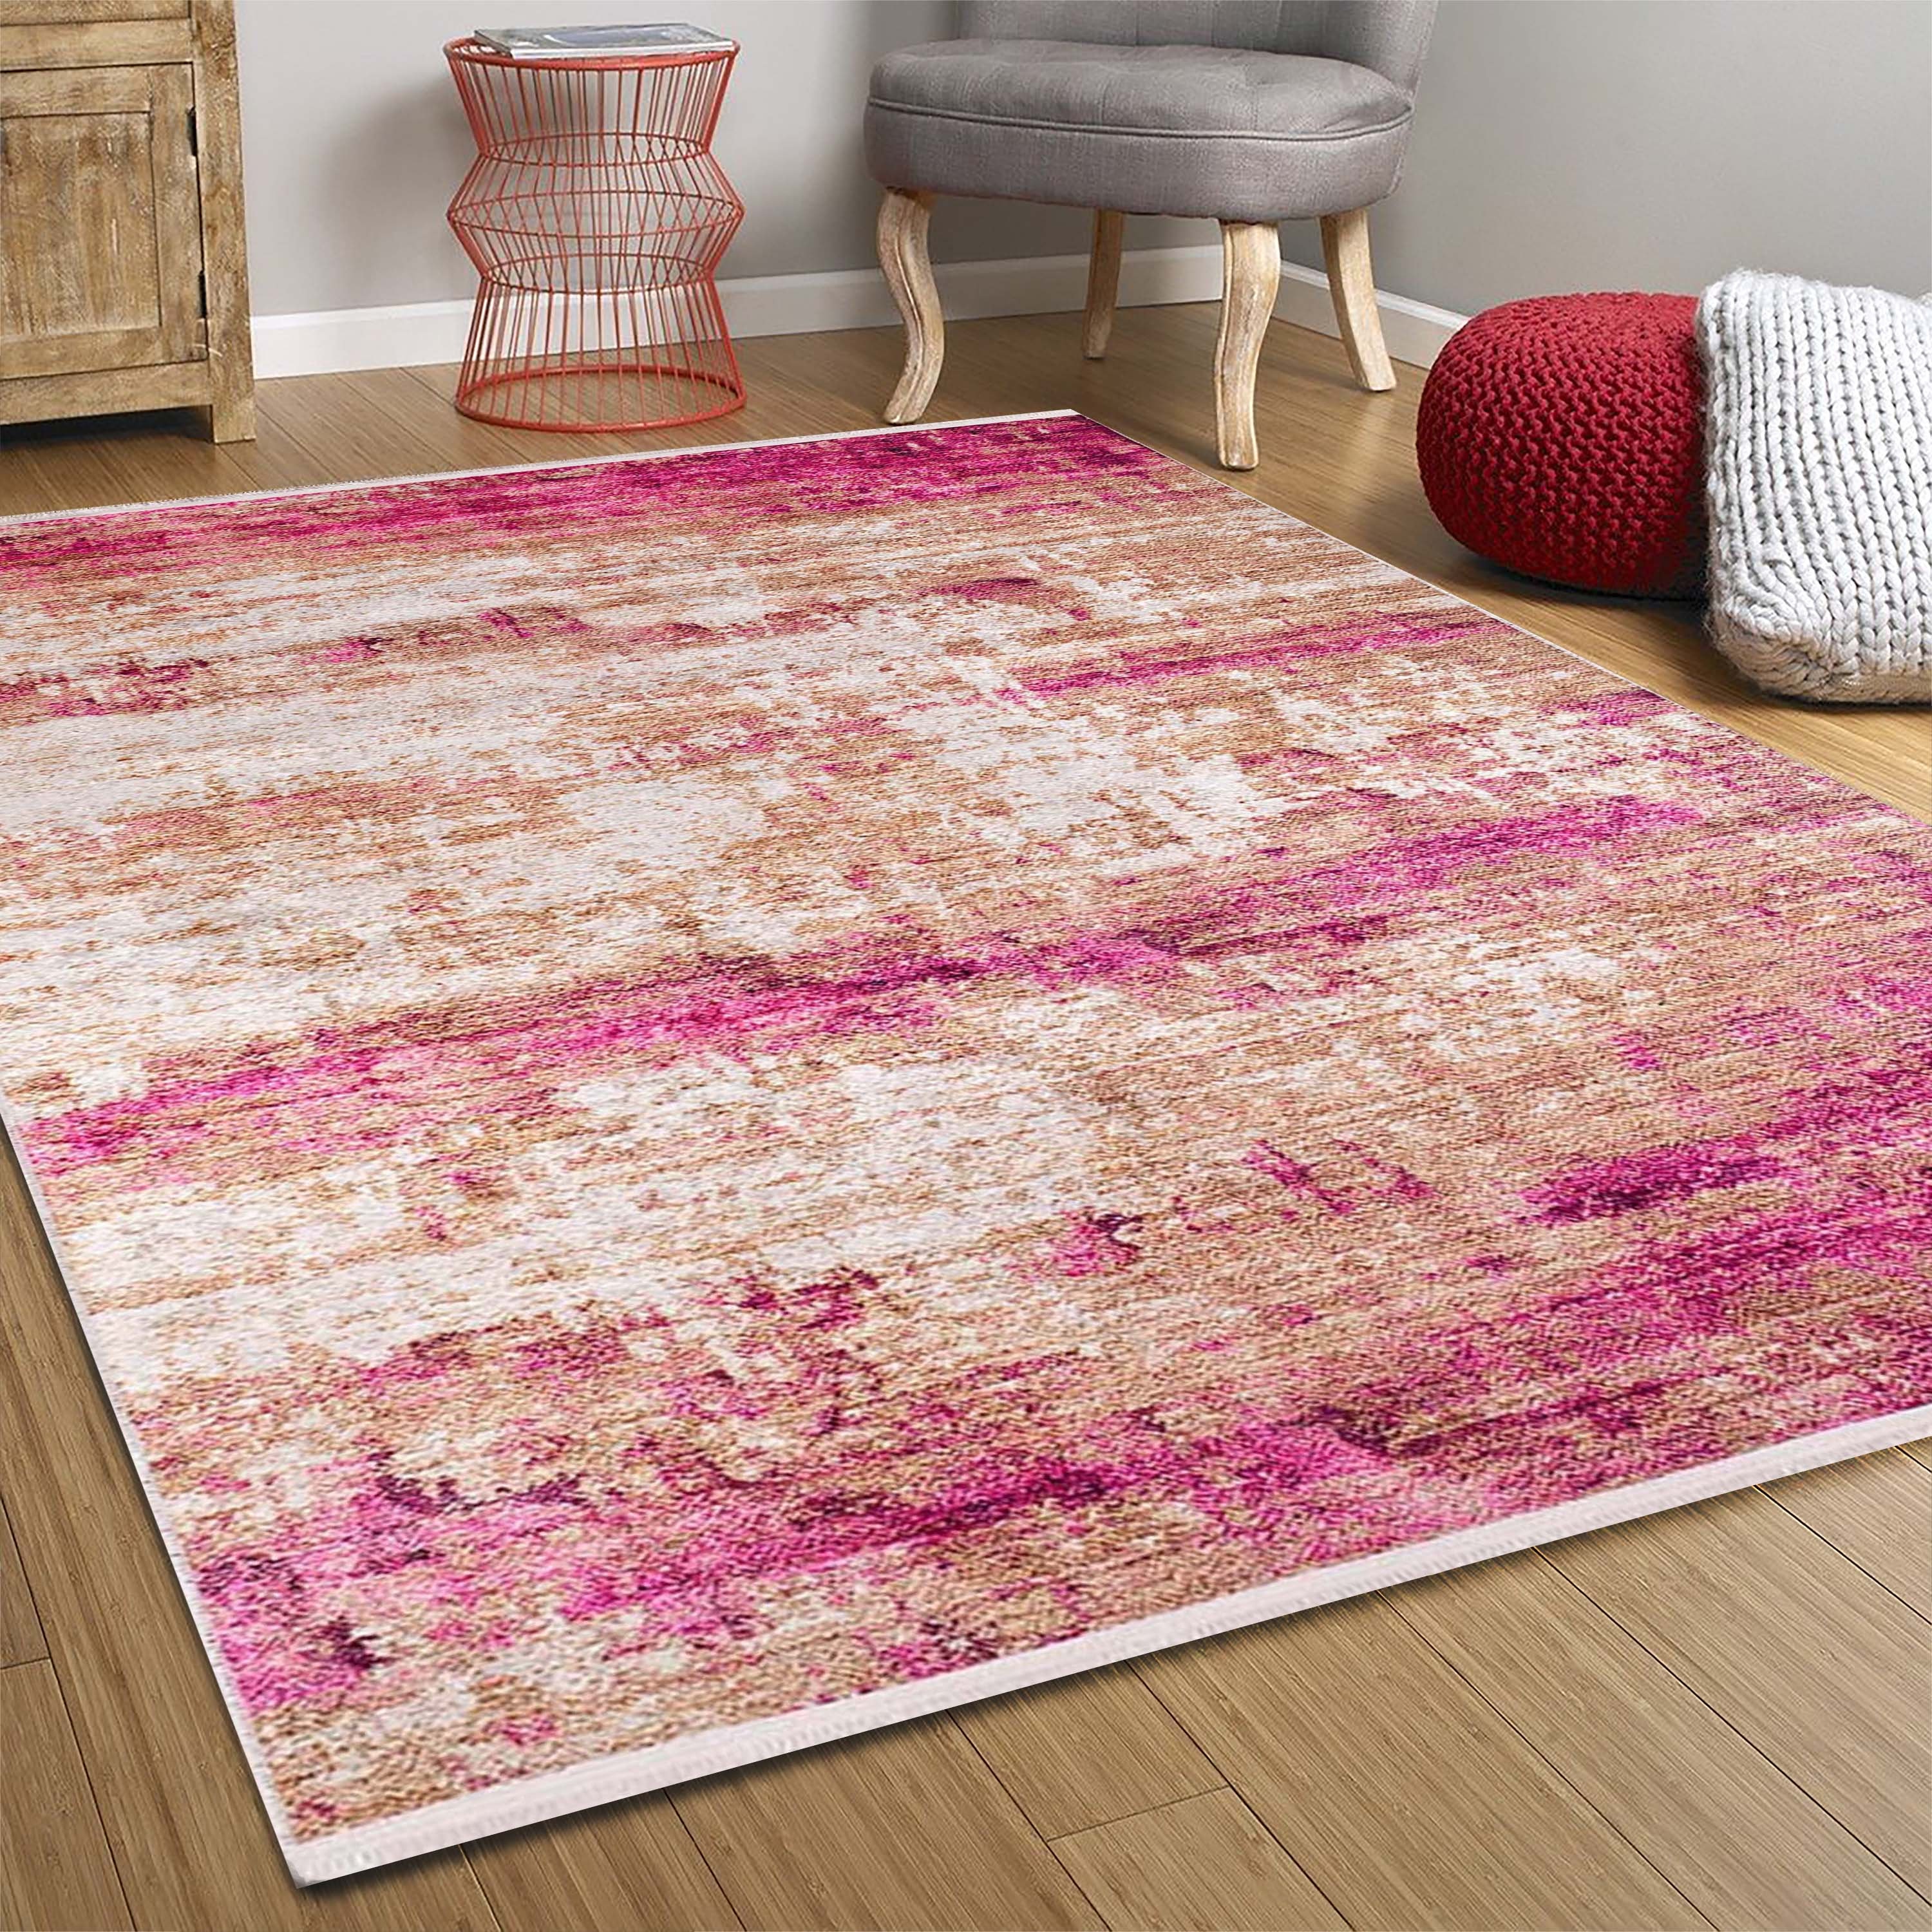 Rosa marmor teppich